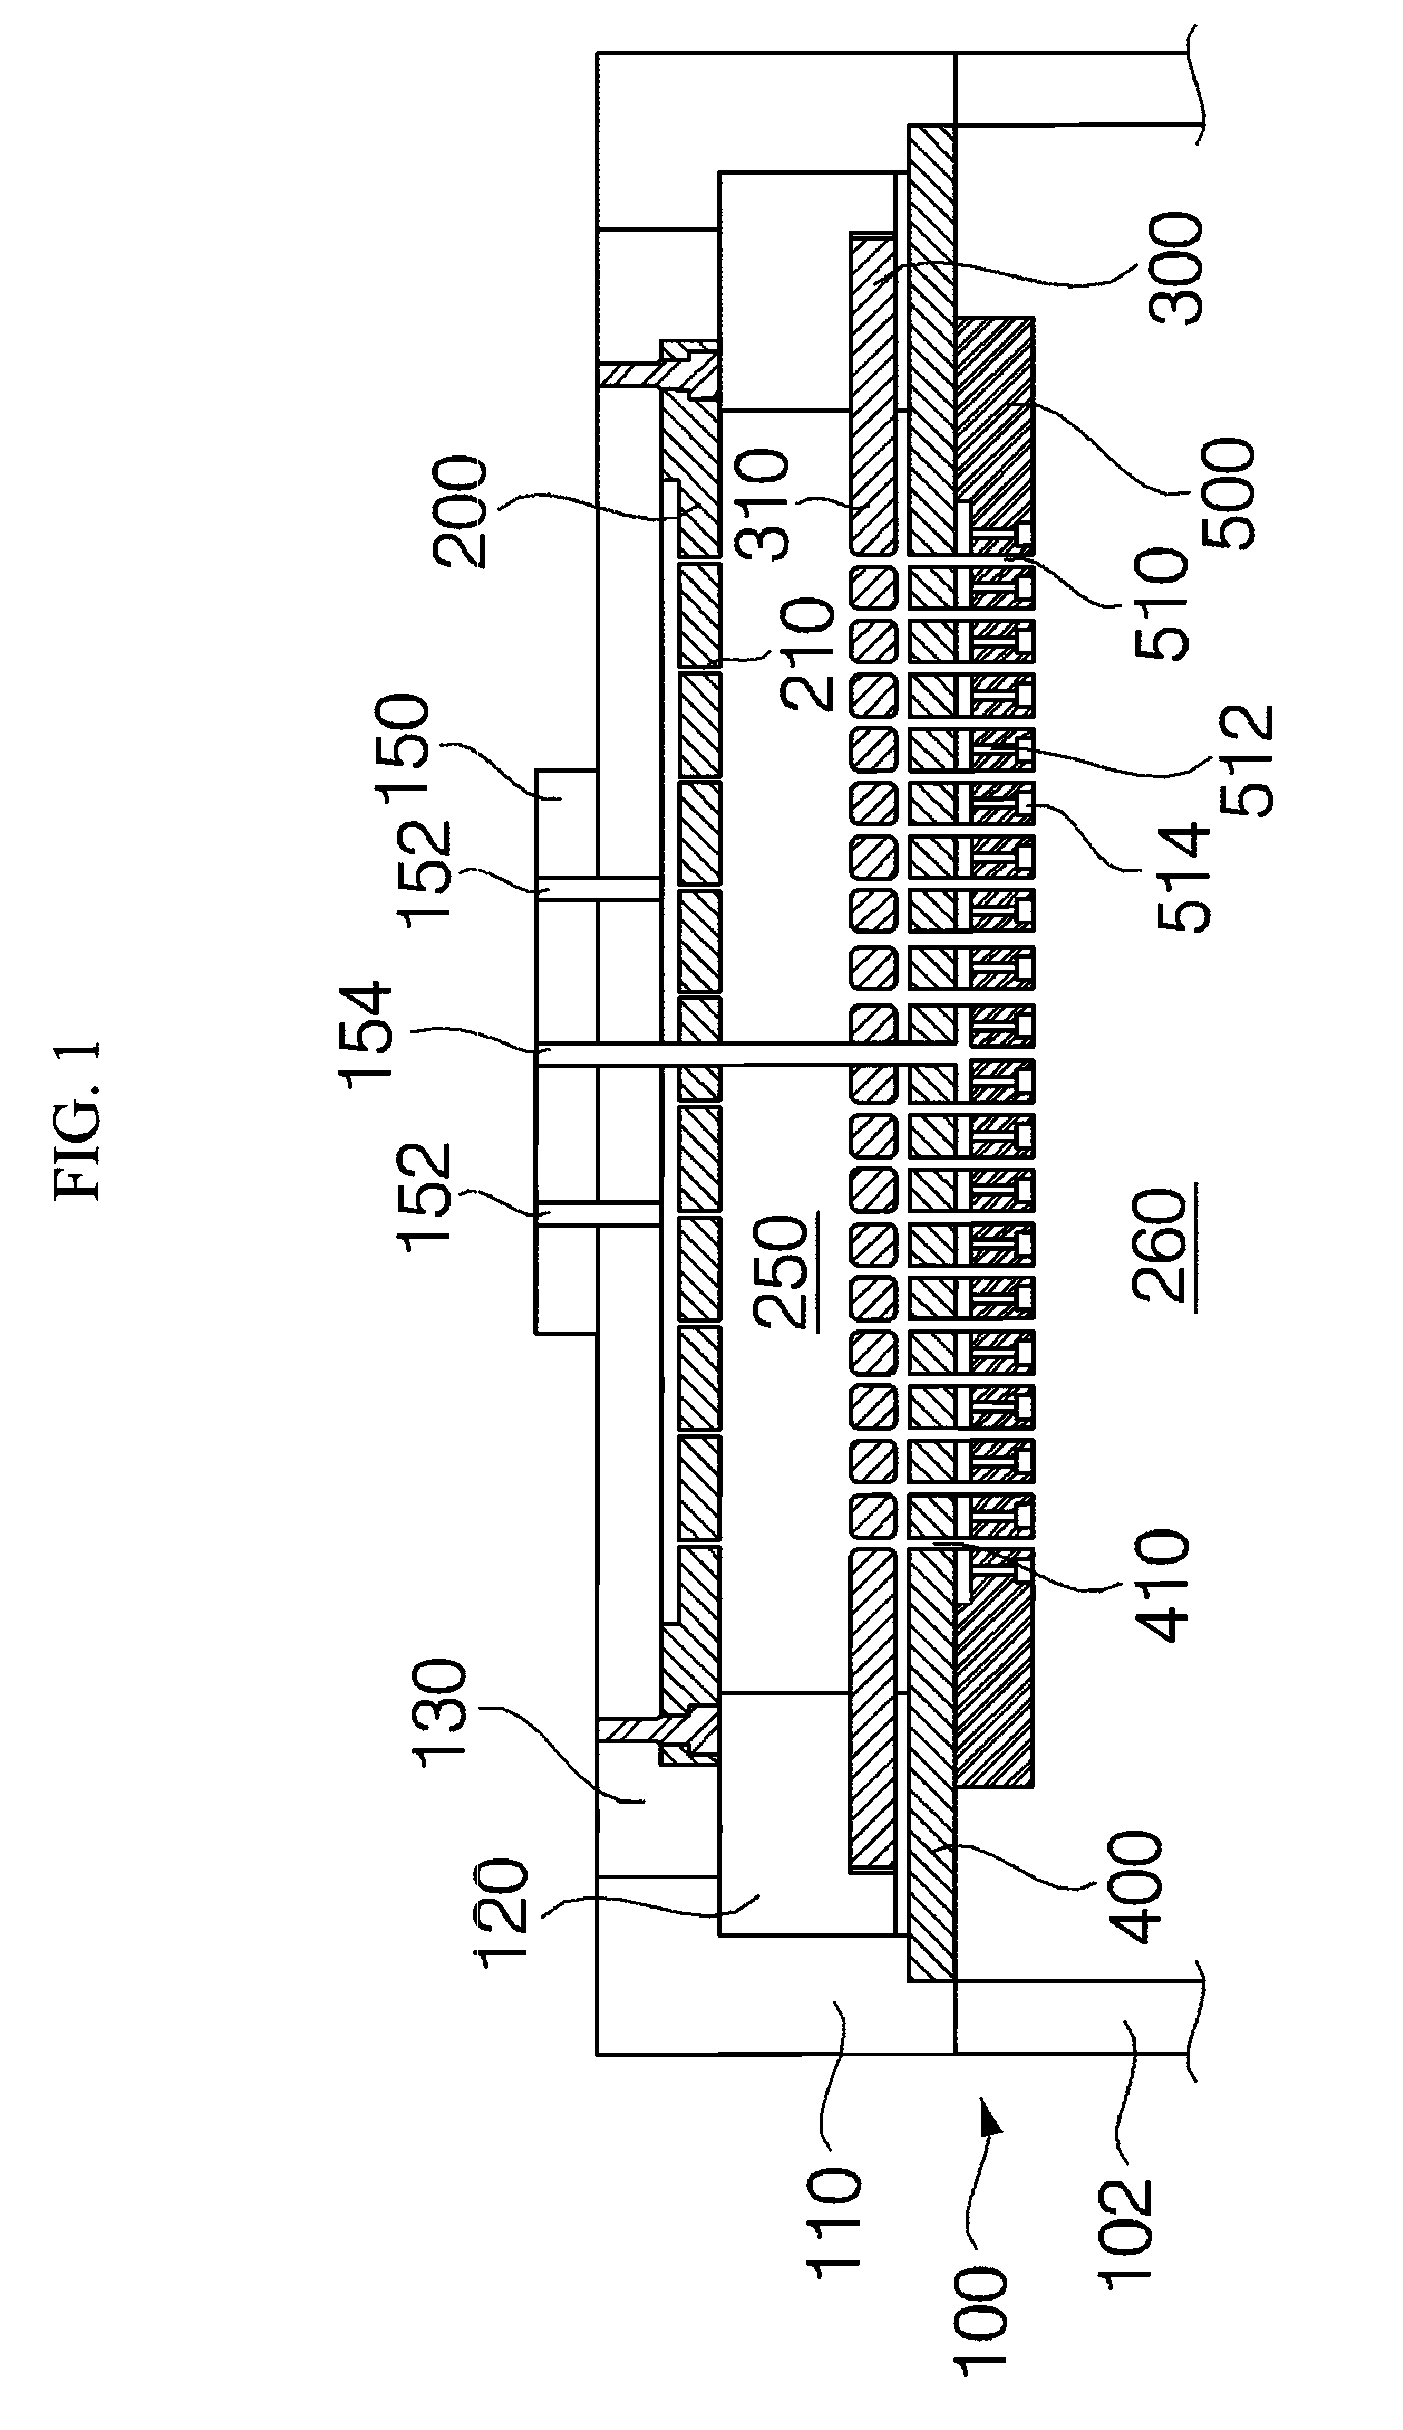 Apparatus for generating remote plasma